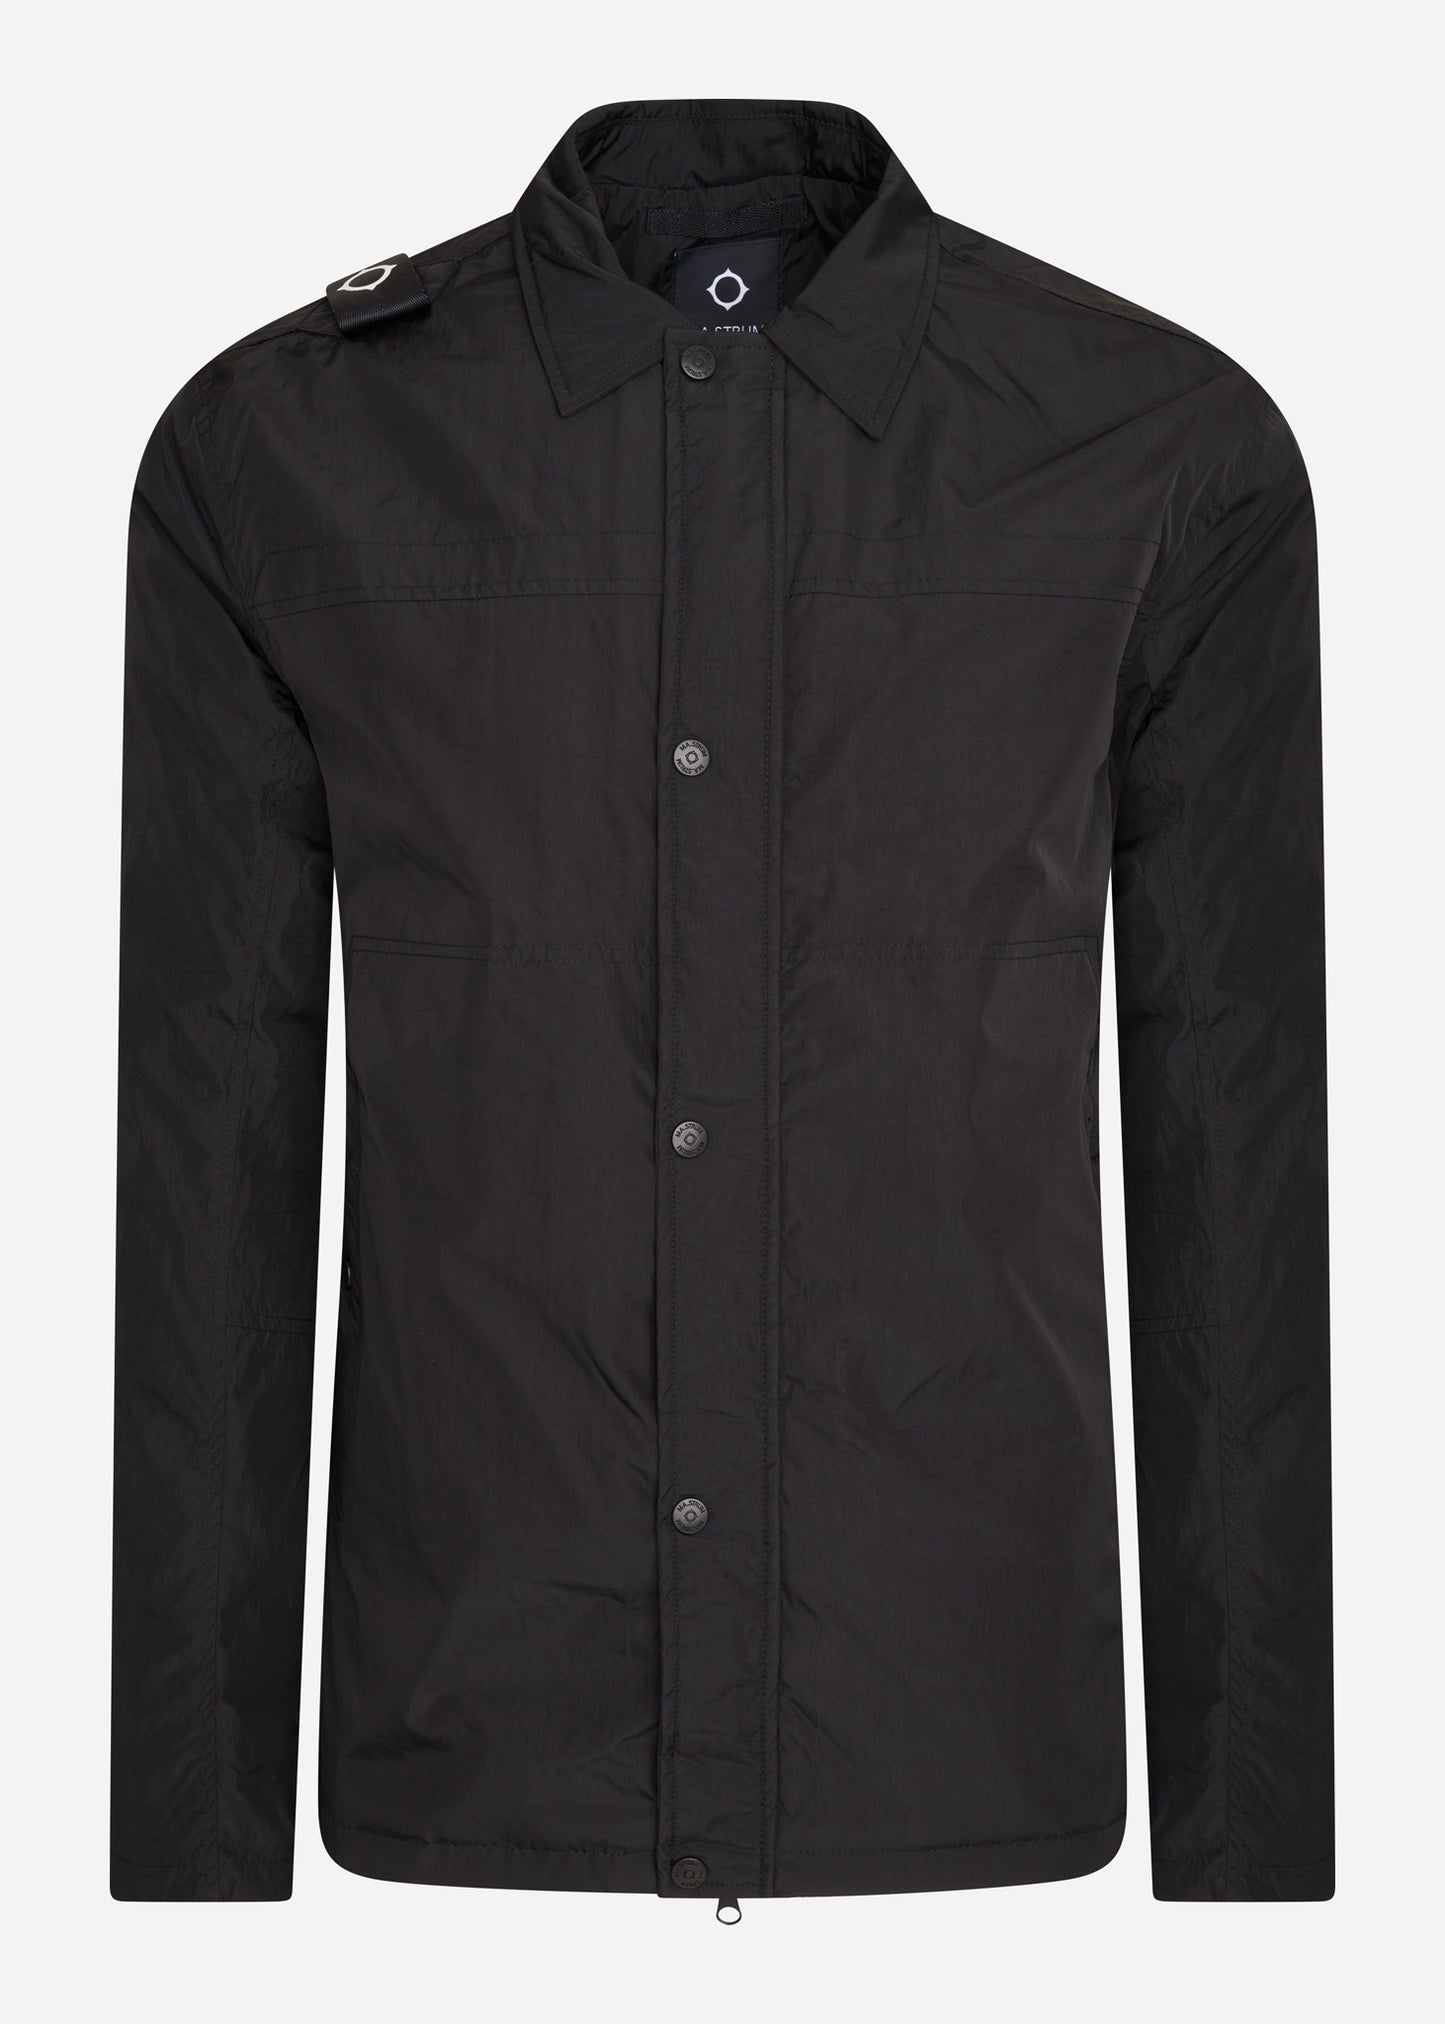 mastrum overshirt jacket black